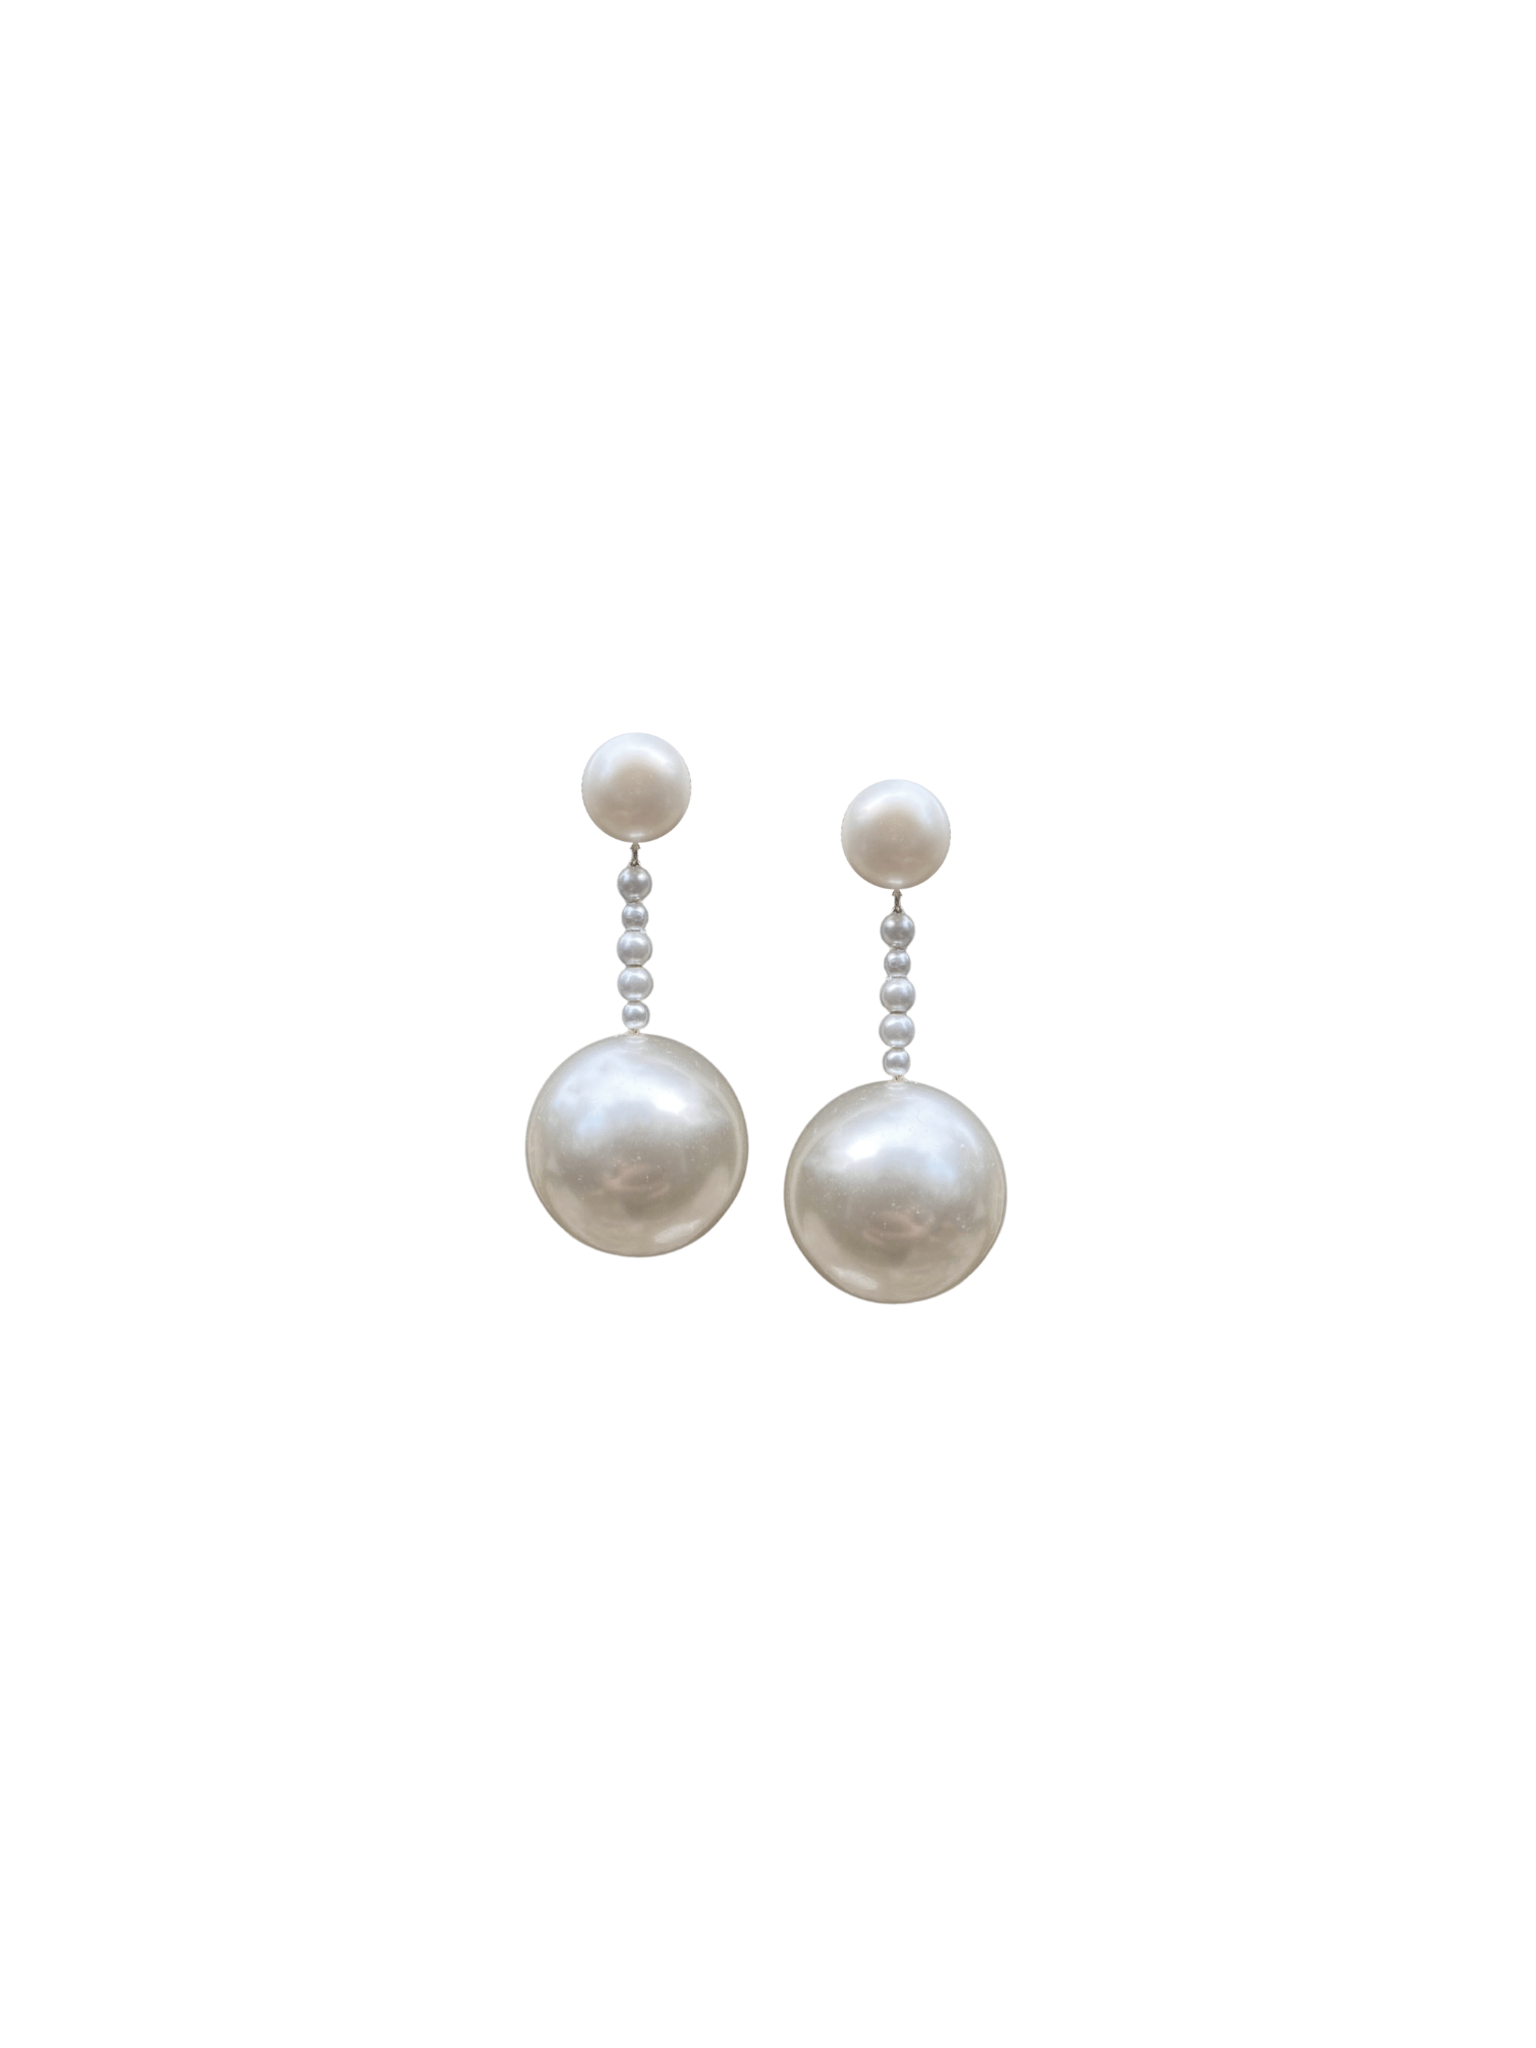 Nicola Bathie Jewelry Earrings Pearl Drop